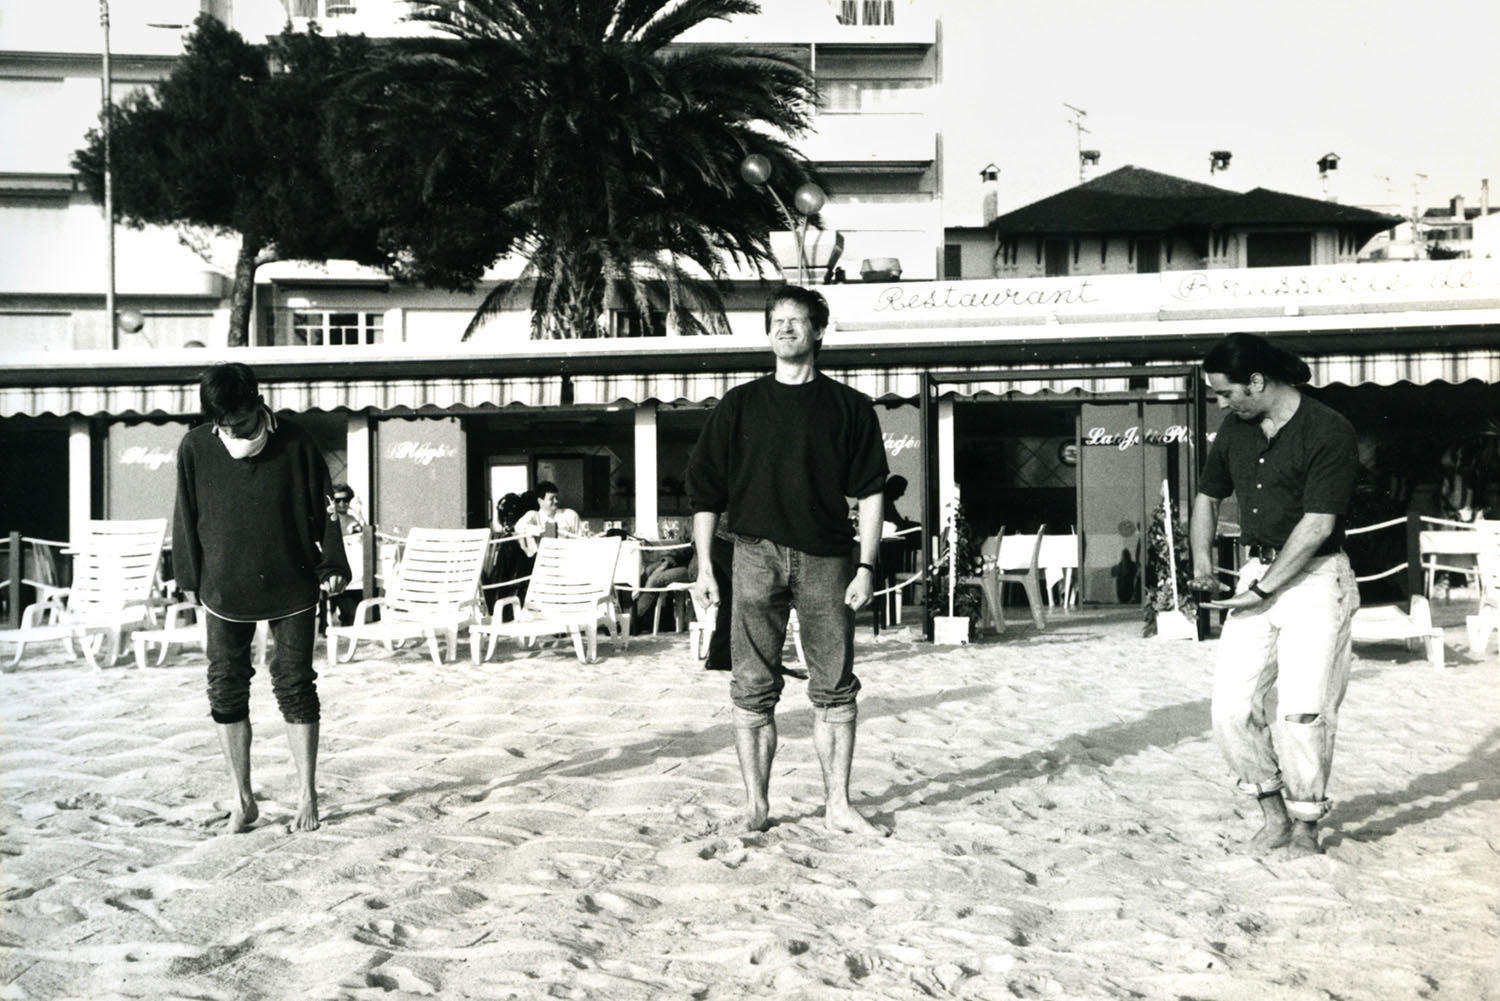 Dieses Foto wurde mit meine alter Minolta, Analog Fotokamera aufgenommen. Mit dem Truppe von Staatstheater Darmstadt haben wir eine Tourneé nach Cannes gehabt und am einen Tag haben wir blödsinn getanzt am Strand. Es war in Frühling 1994 aufgenommen.